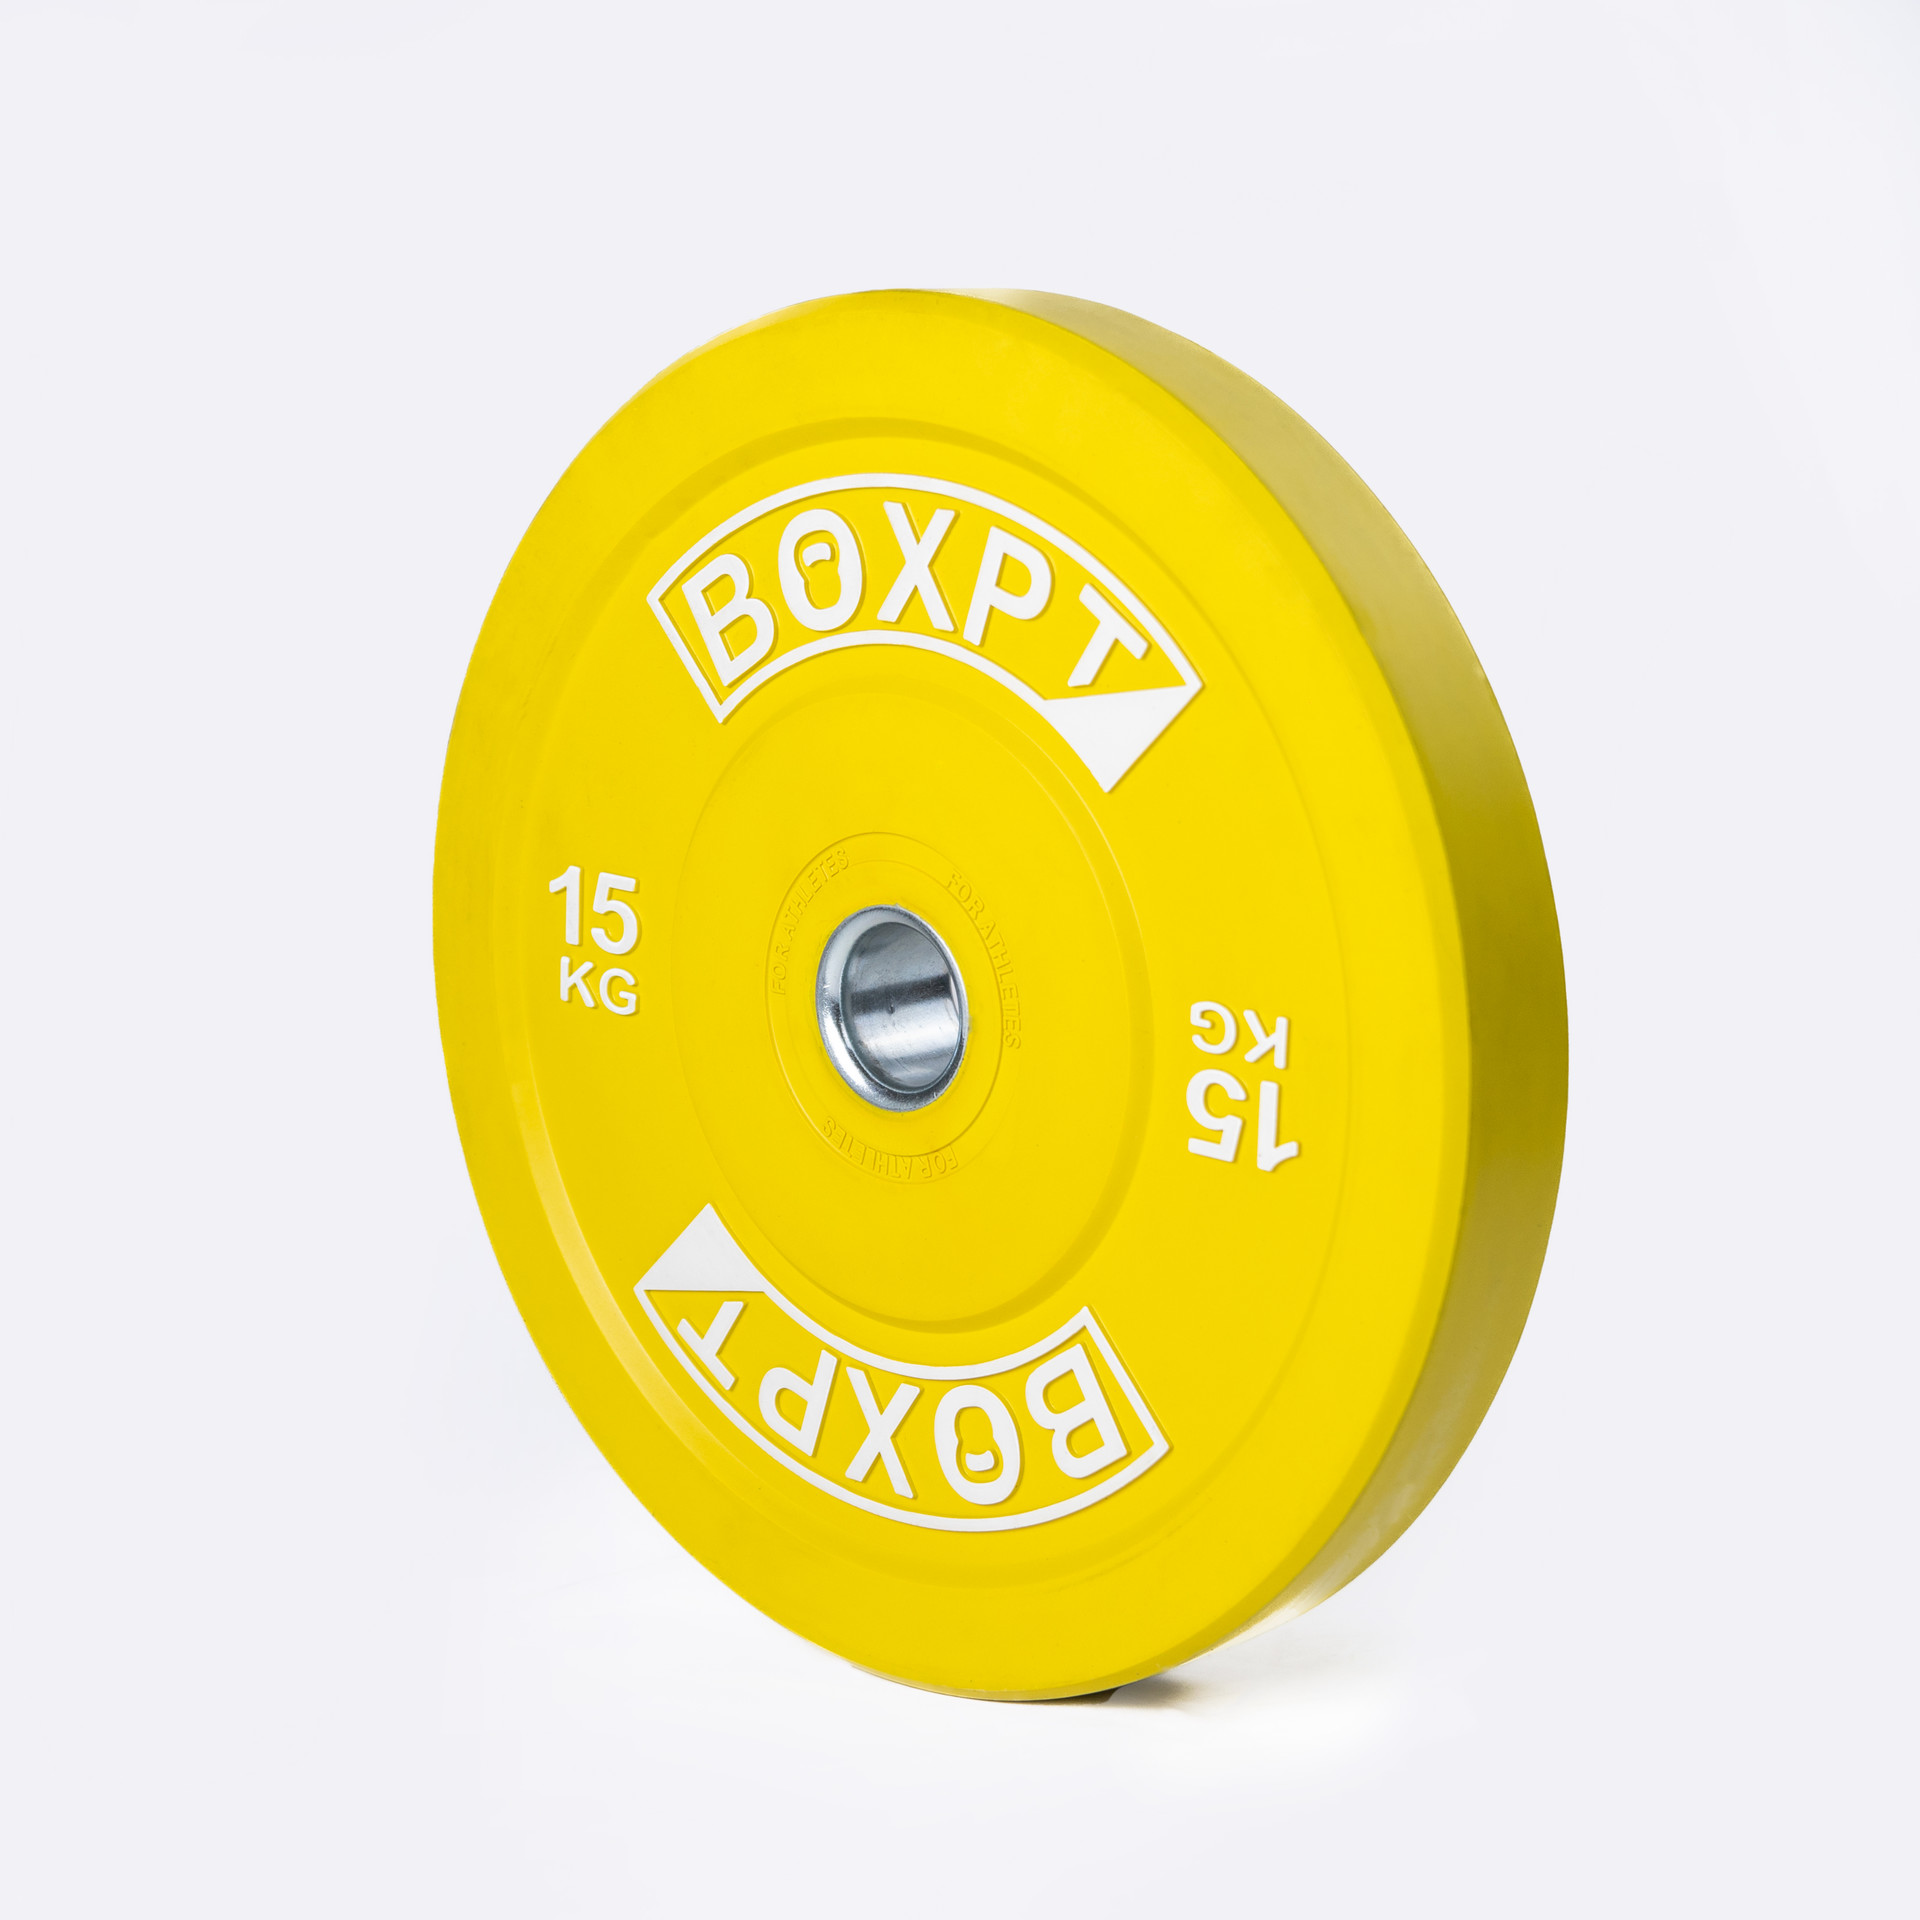 Disco Bumper Colorido Boxpt 15kg - amarillo - 